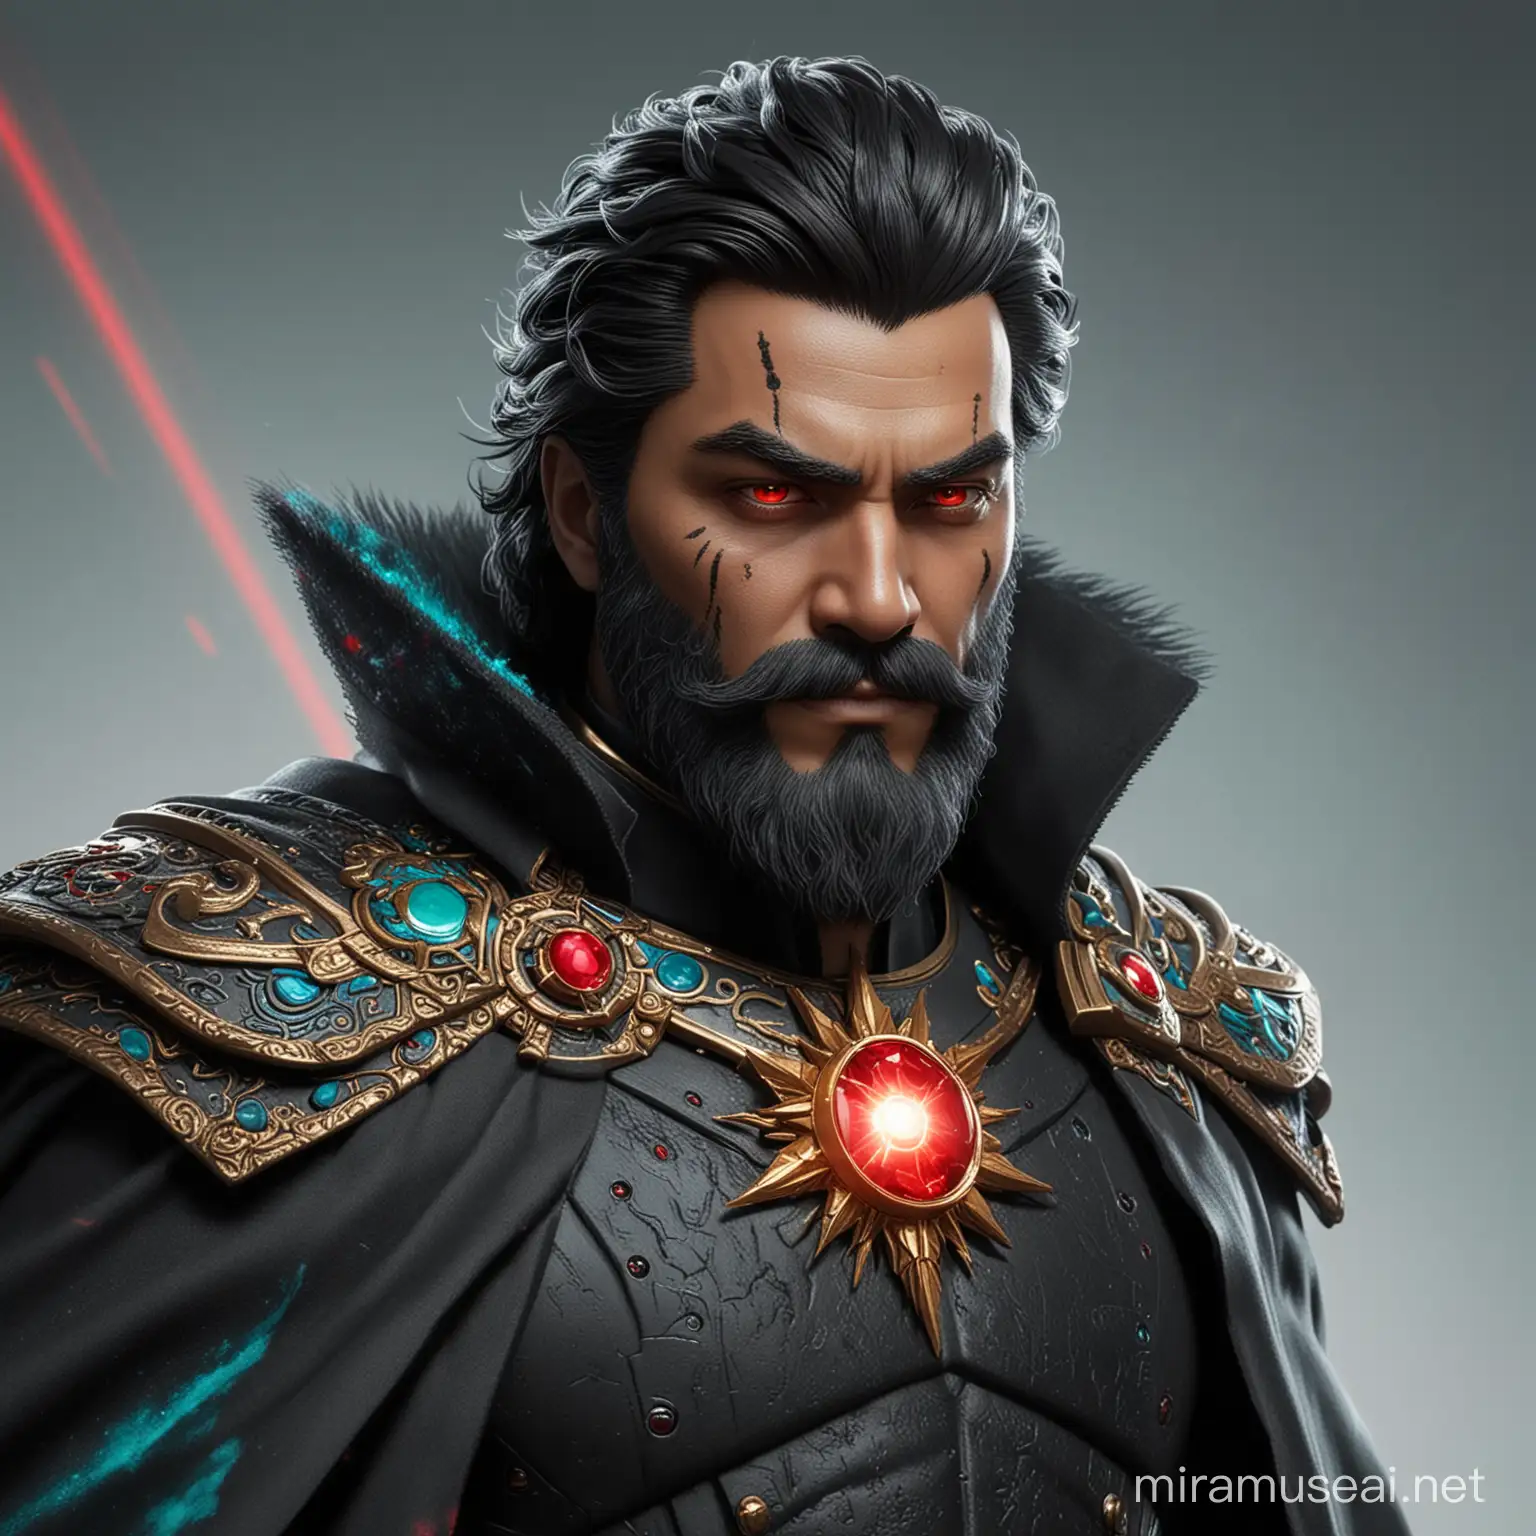 Un emperador especial, traje negro, capa, una gema roja en el pecho, cabello negro y alborotado, piel color turquesa, barba, y ojos rojos que disparan rayos láser. 